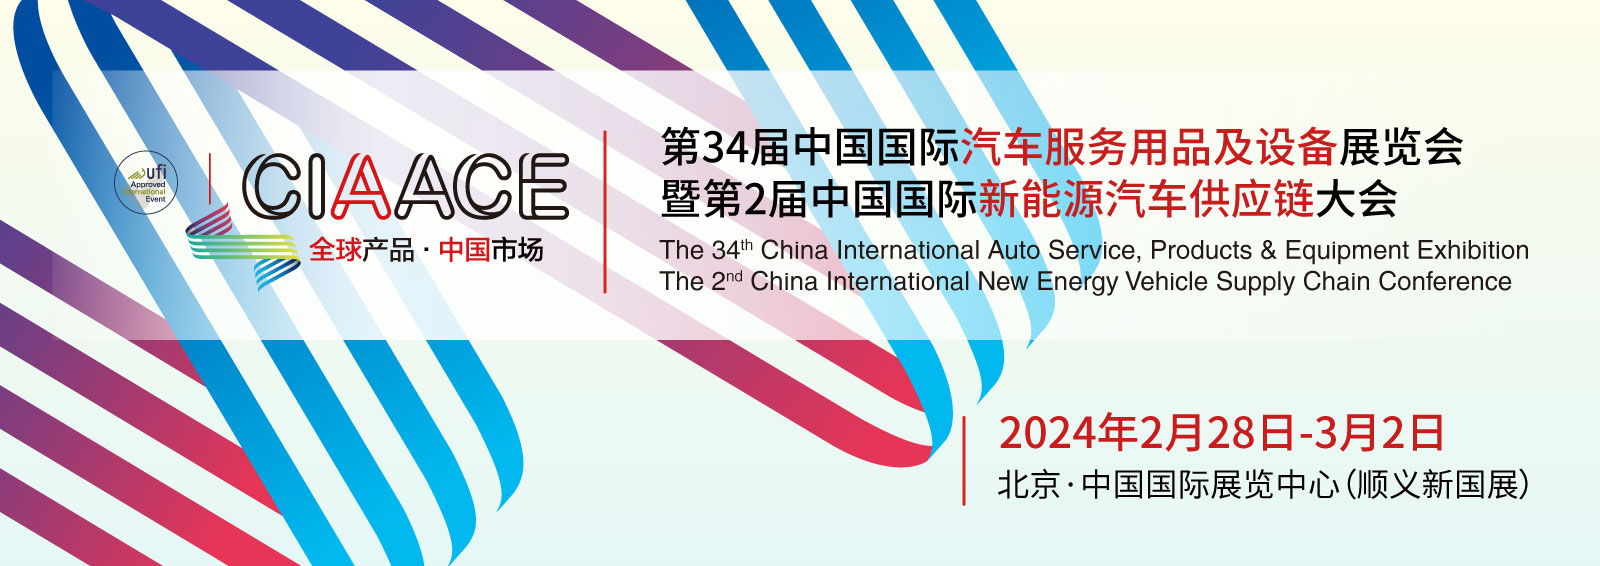 第34届中国国际汽车服务用品及设备展览会暨 第2届中国国际新能源汽车供应链大会